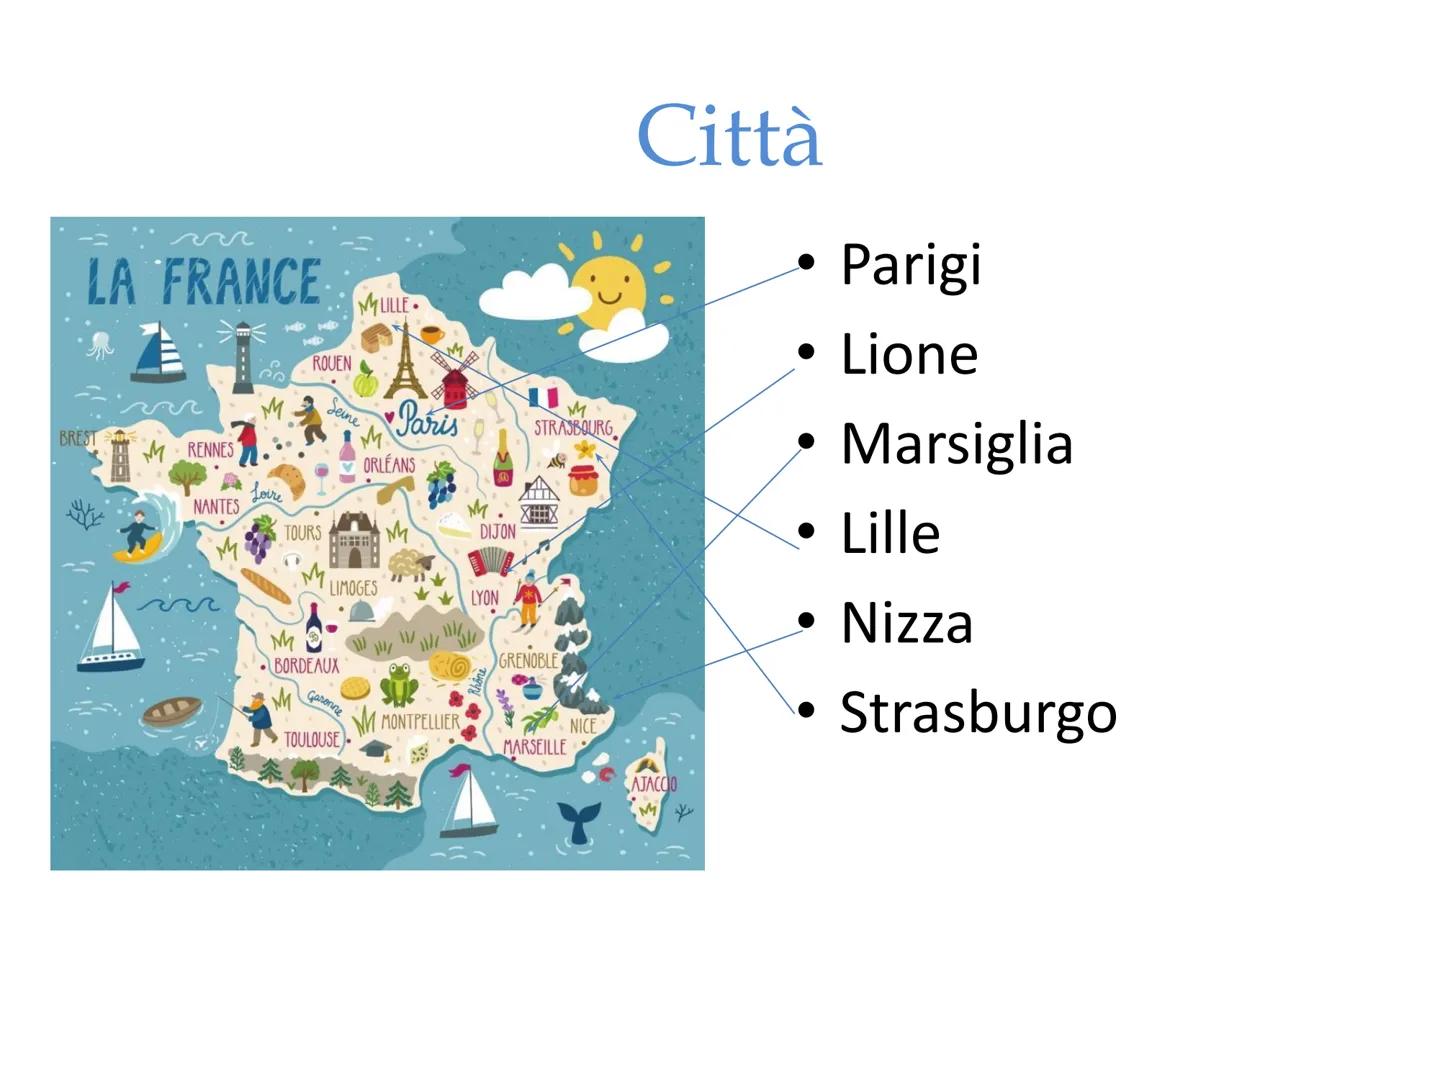 
<p>La Francia è il paese più vasto dell'Unione Europea. Fa parte geograficamente della regione francese che comprende Belgio, Lussemburgo, 